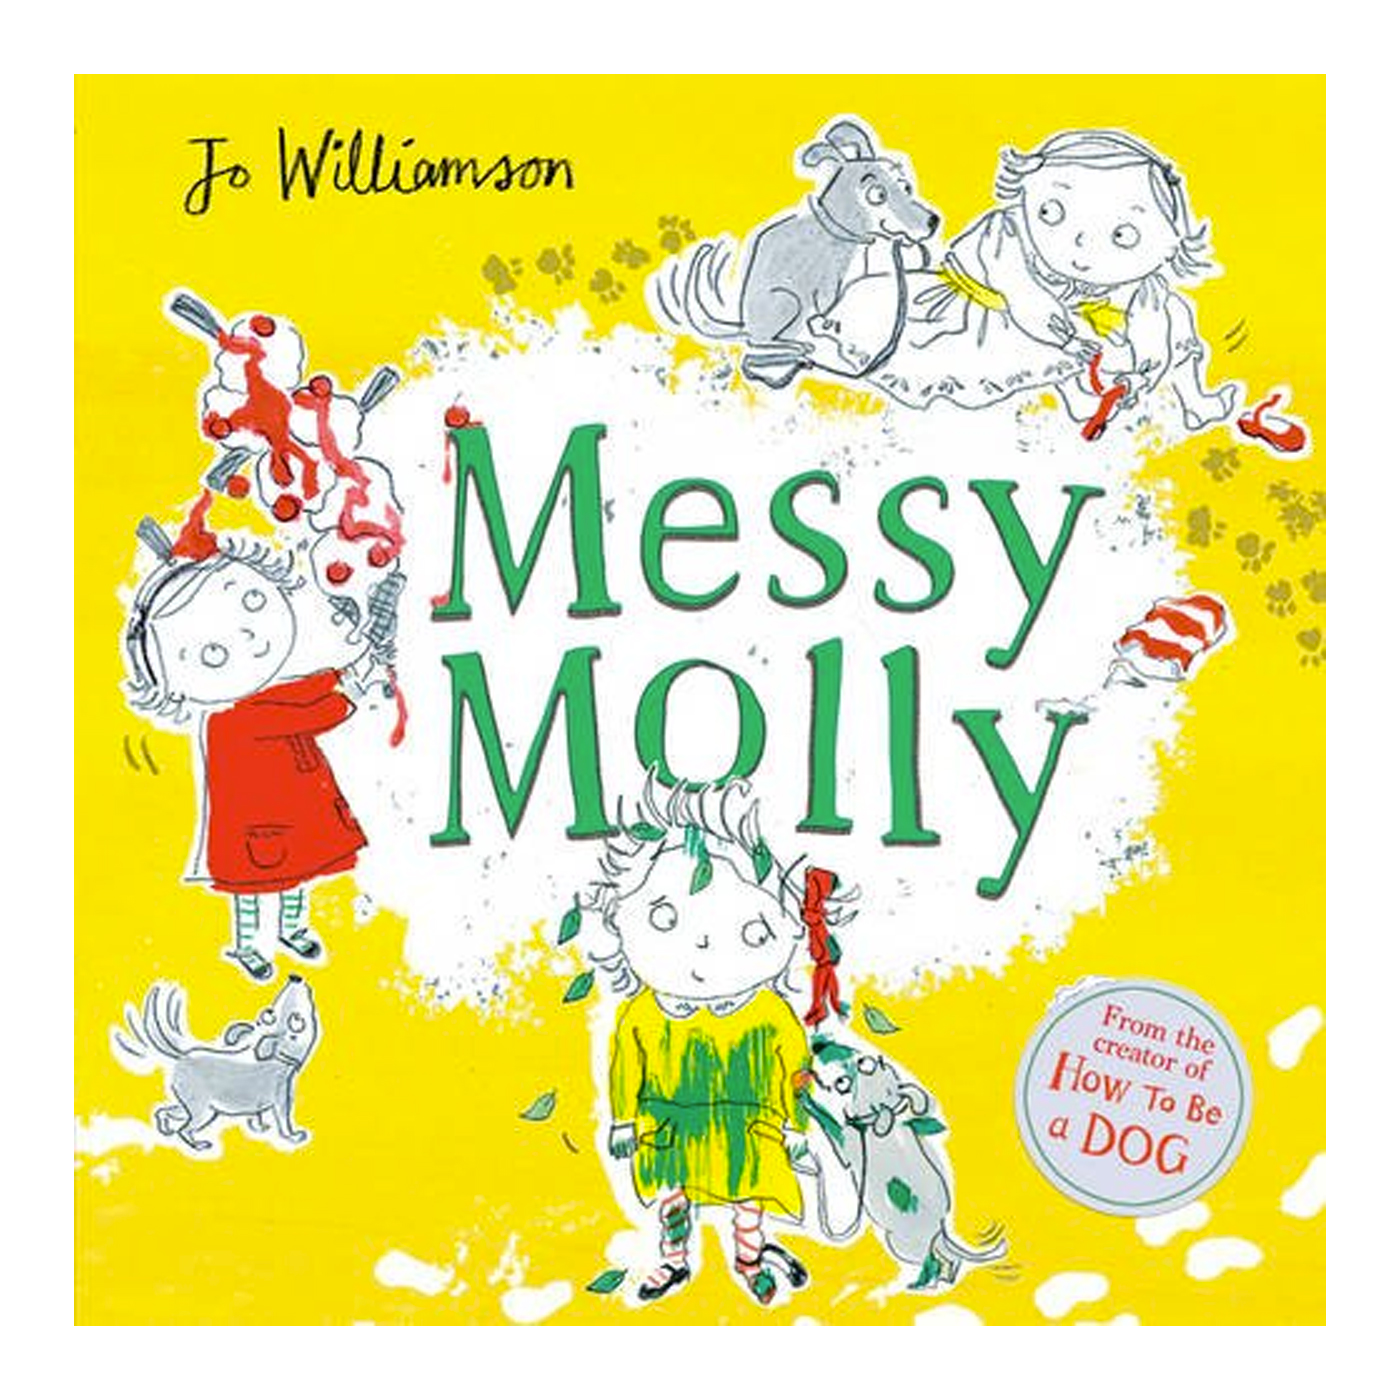  Messy Molly